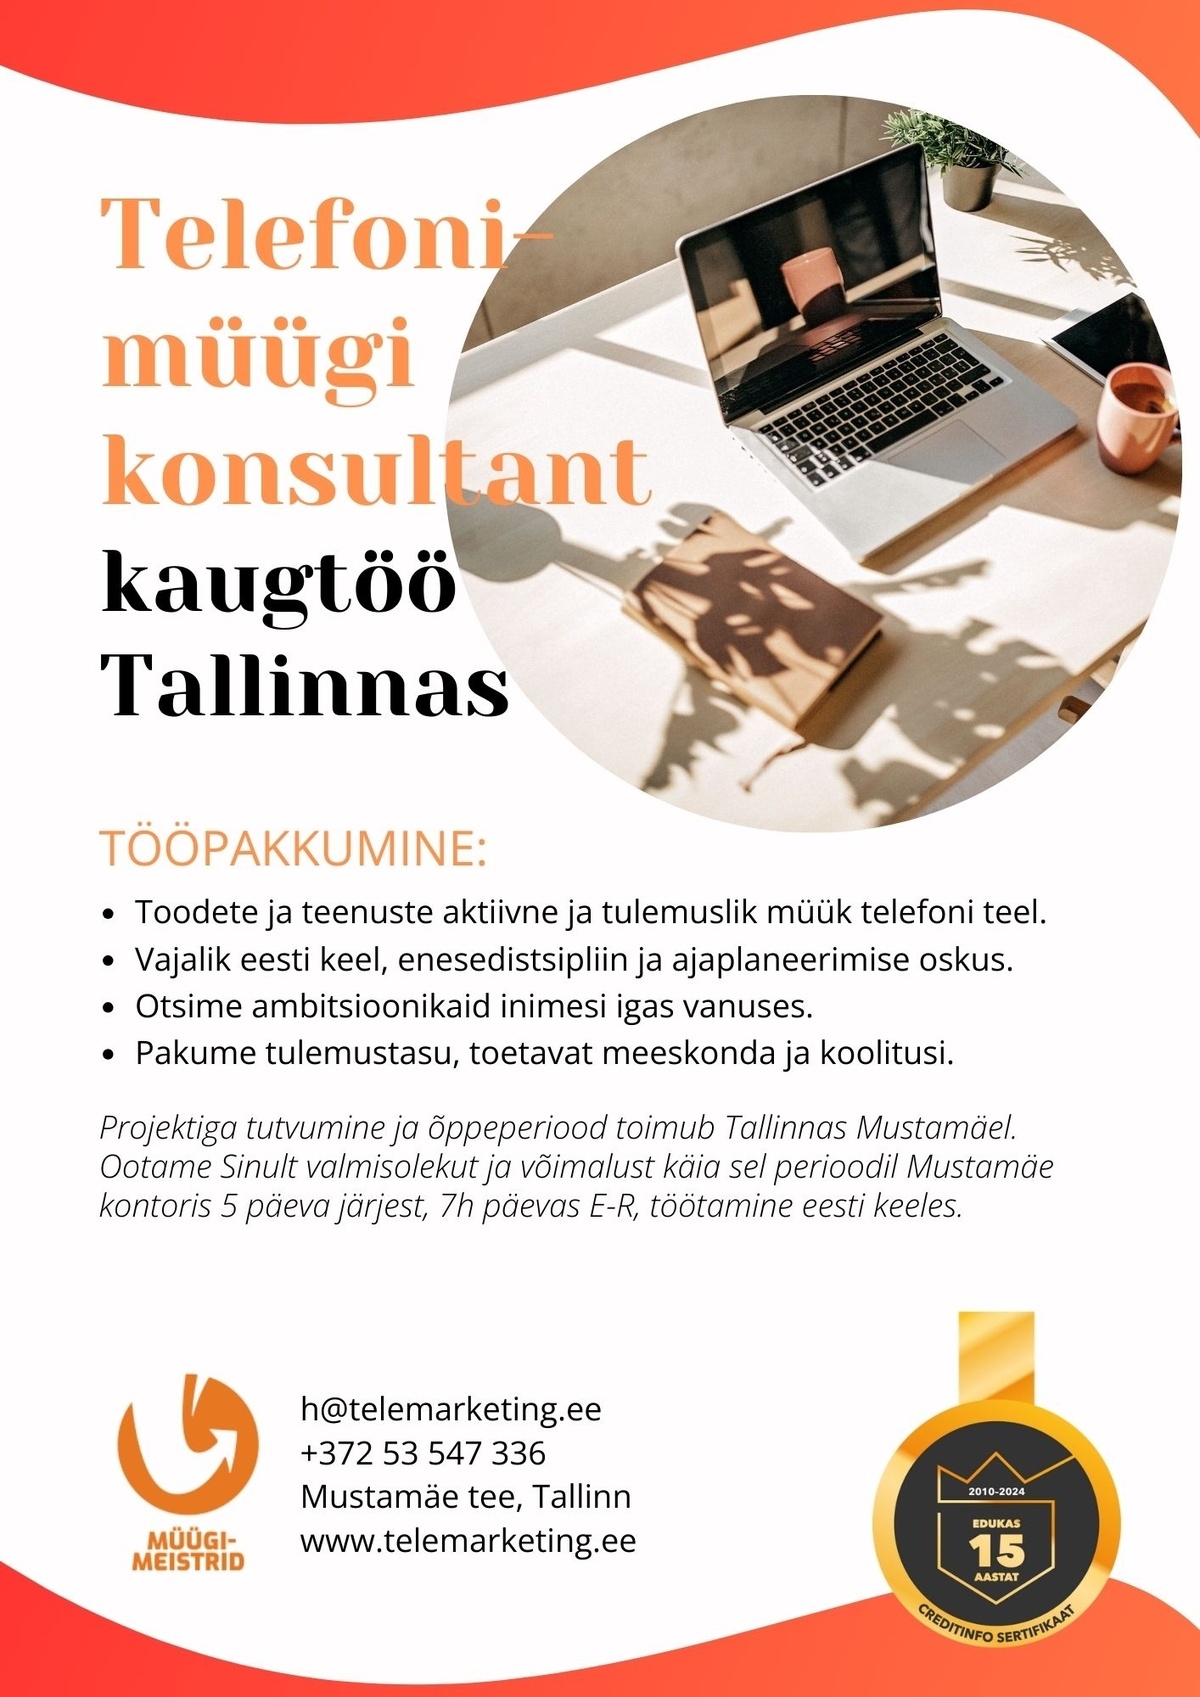 Müügimeistrite AS Telefonimüügi konsultant (kaugtöö Tallinnas)